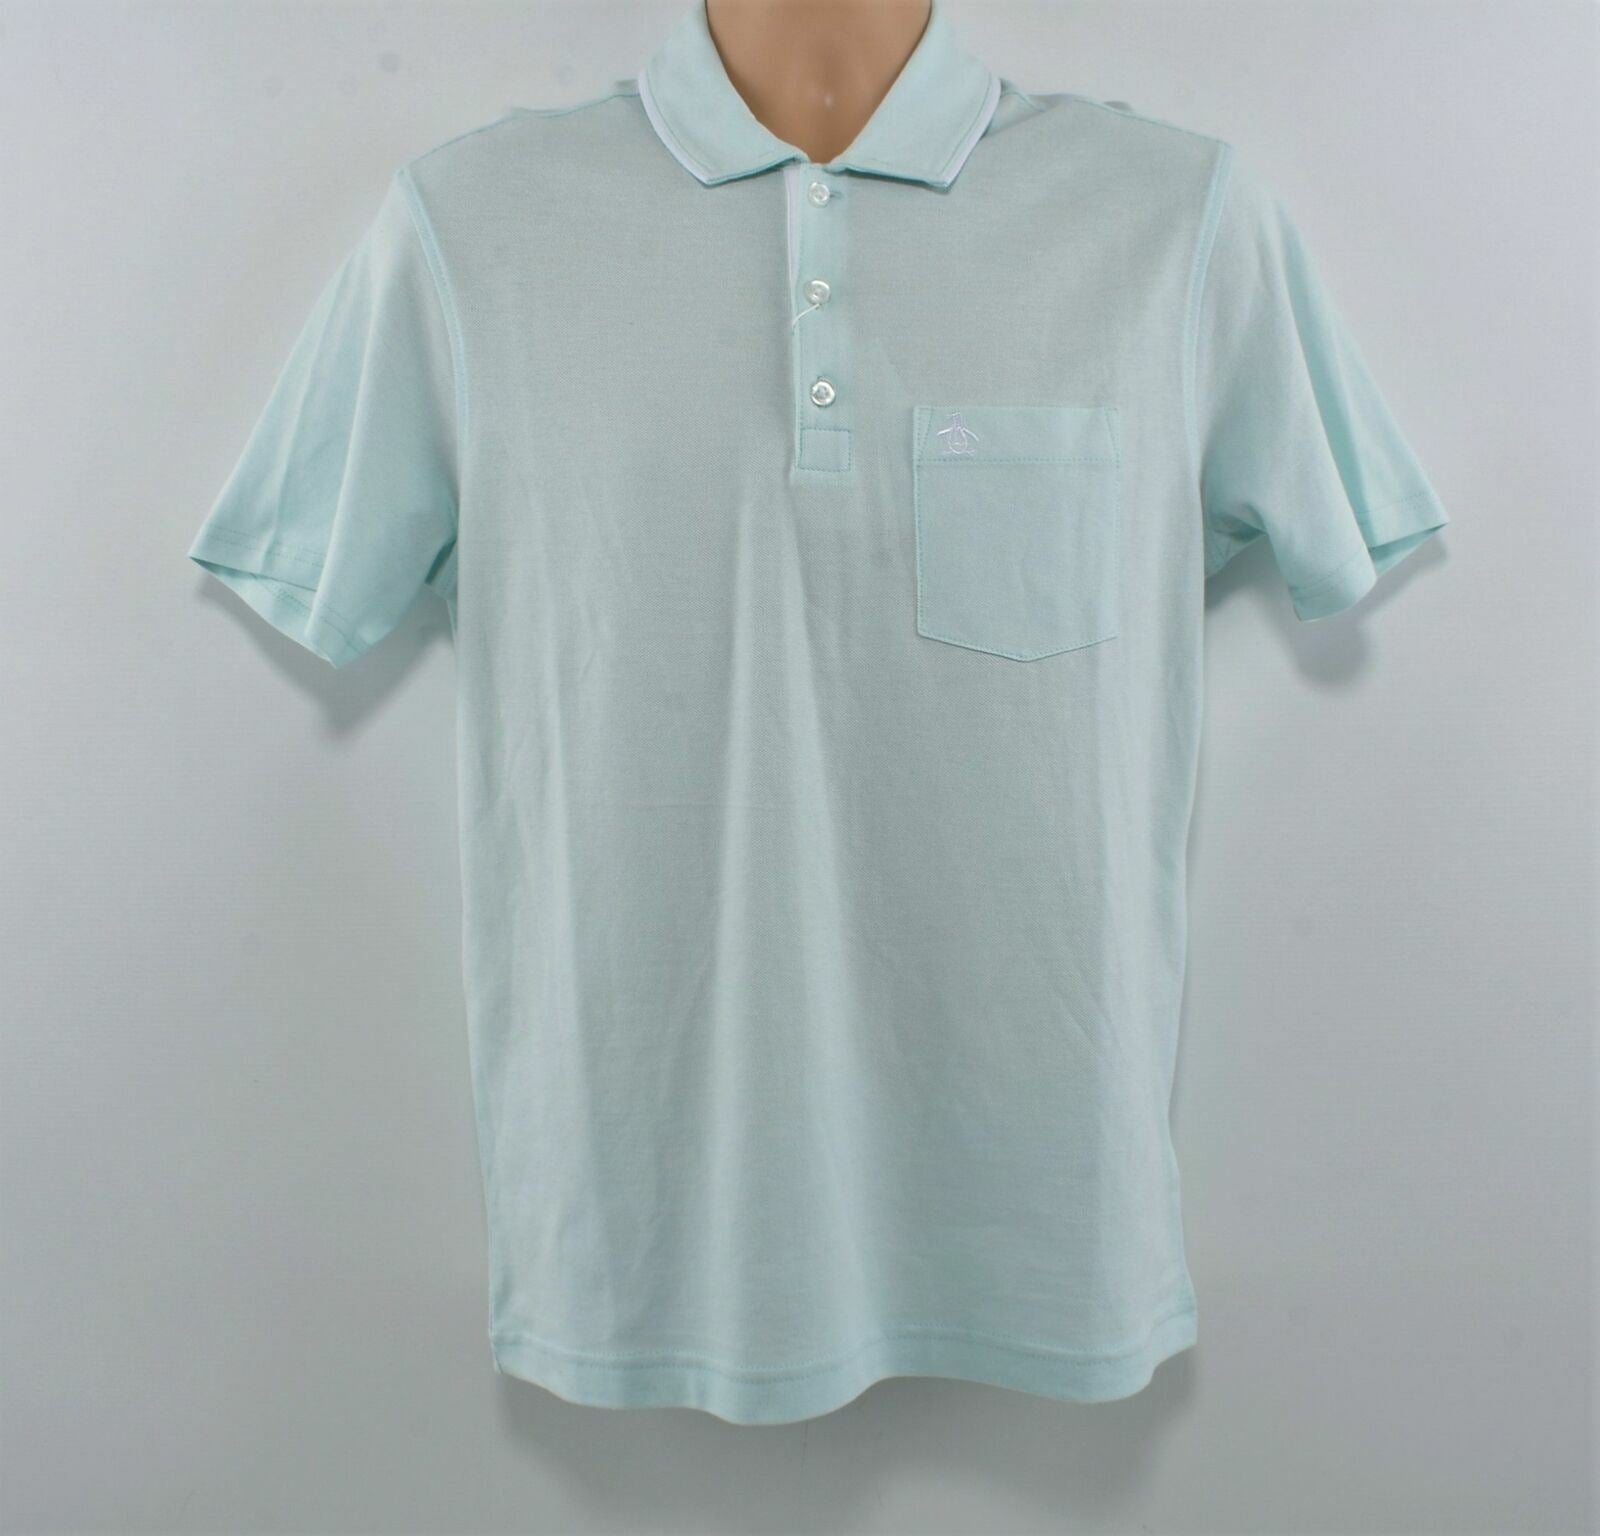 PENGUIN Men's Pastel Blue Cotton Polo Shirt- Size Small